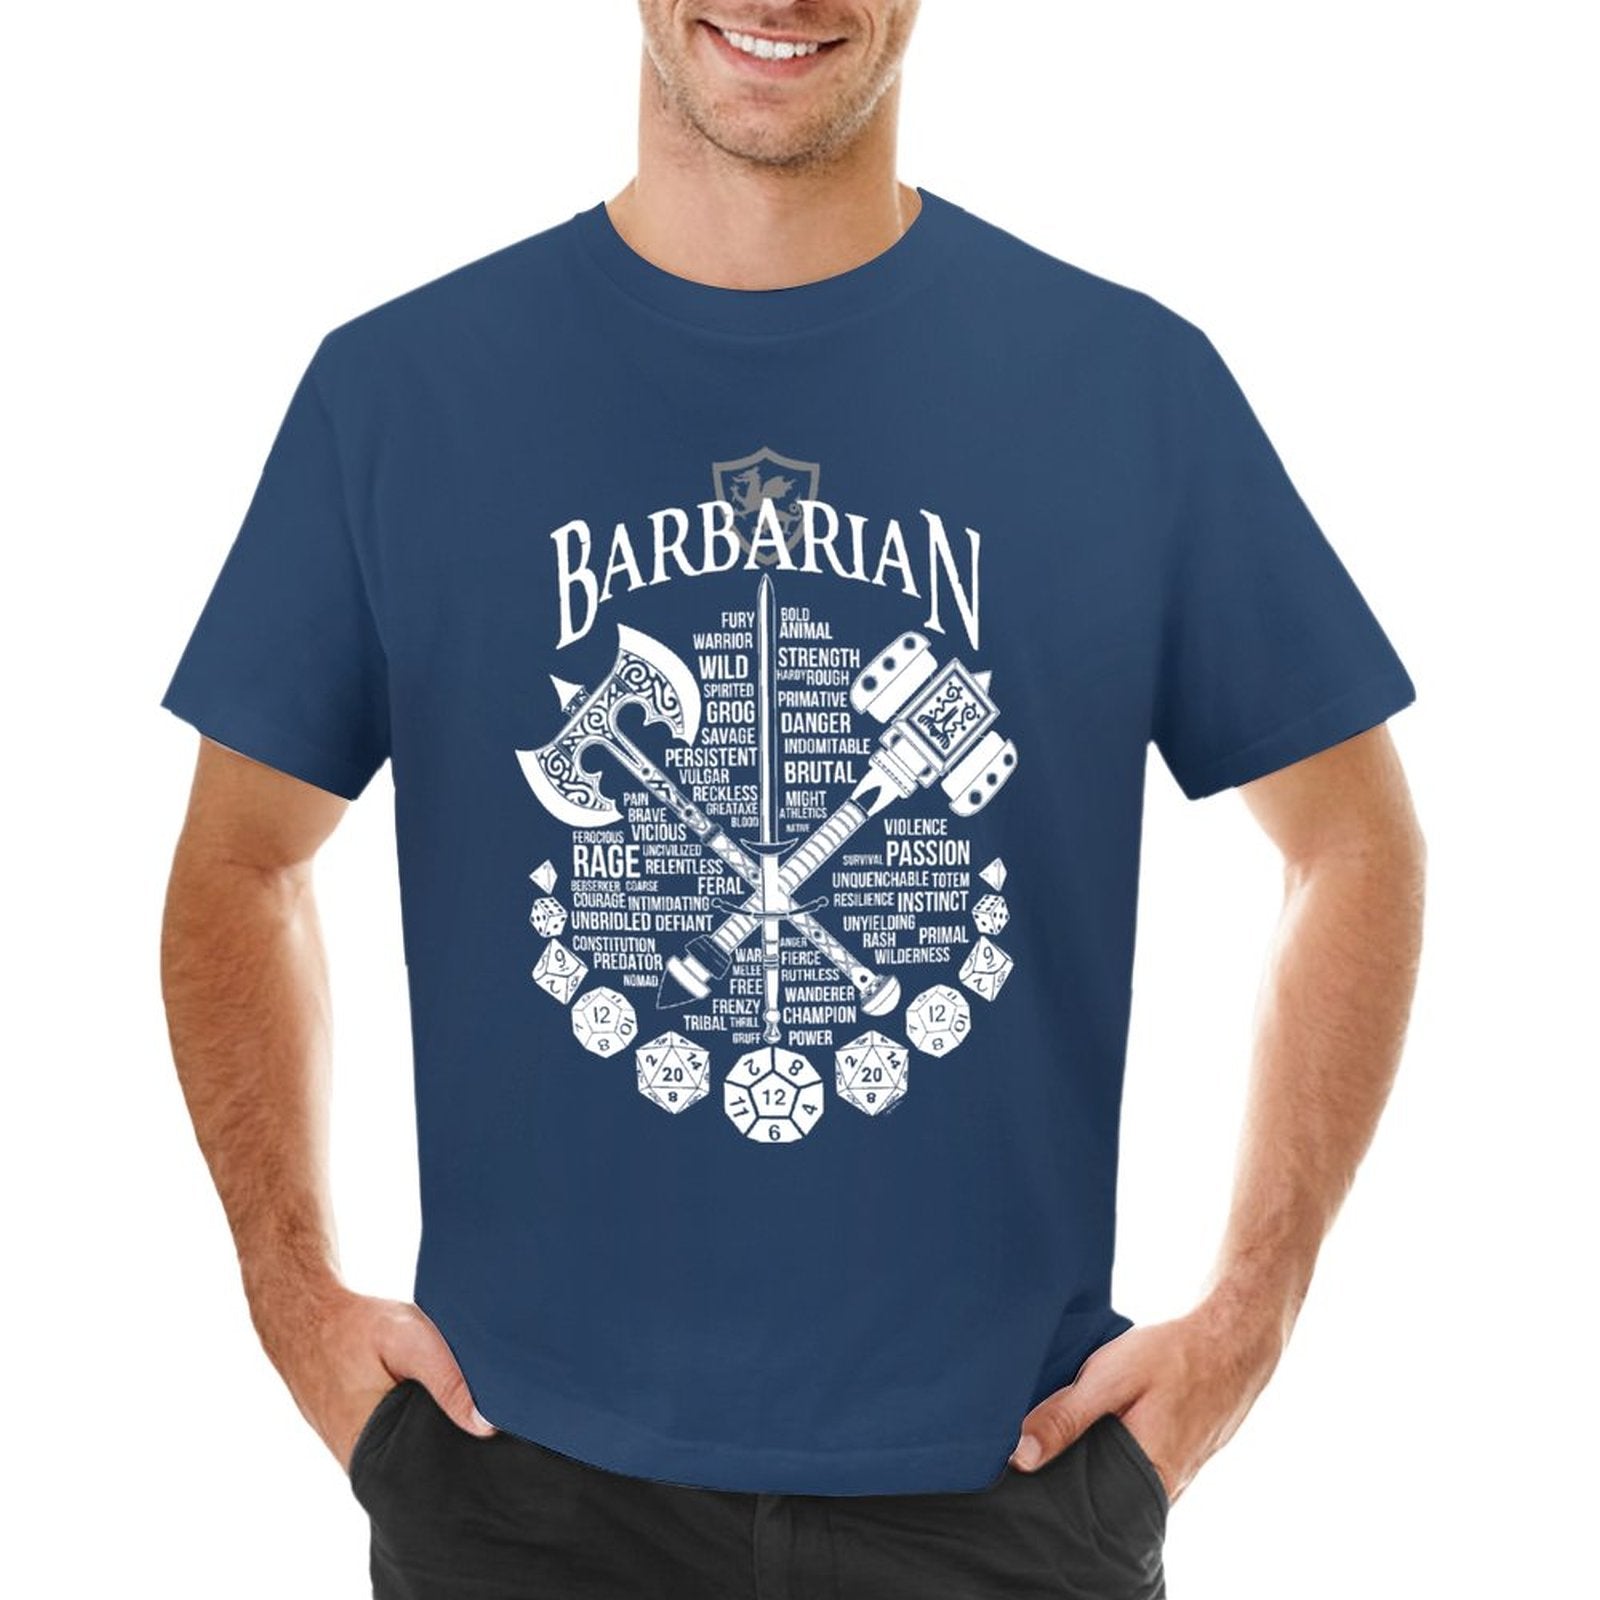 Barbarian Class Cotton T-Shirt